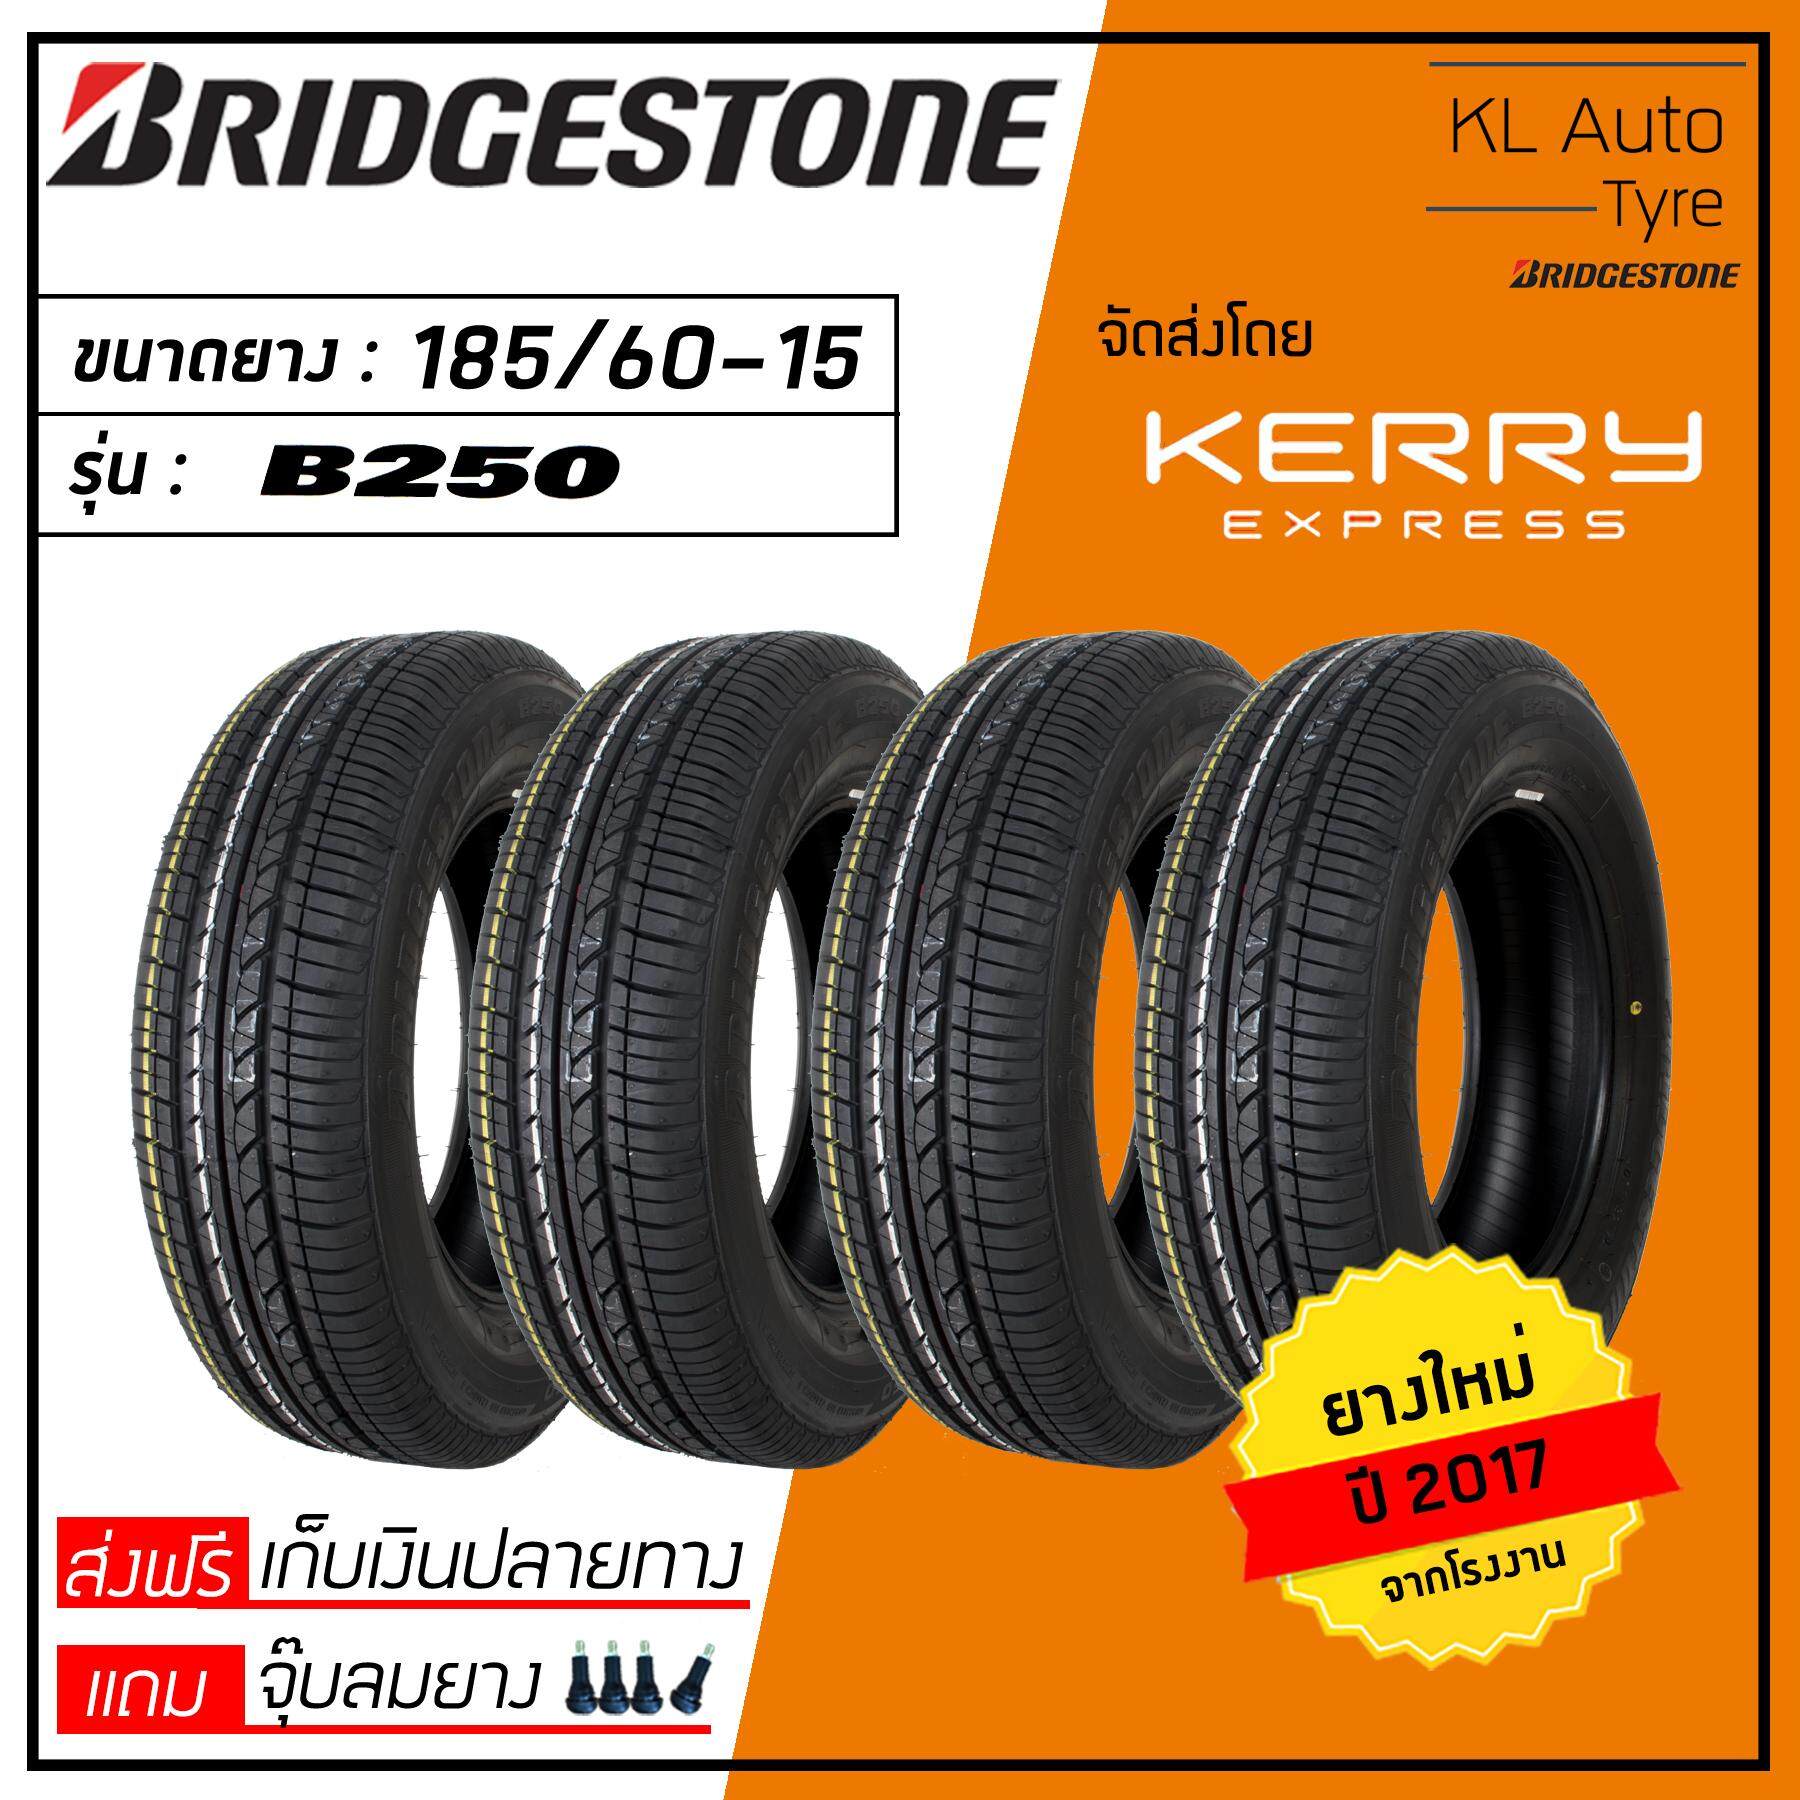  บุรีรัมย์ Bridgestone 185/60-15 B250 4 เส้น ปี 17 (ฟรี จุ๊บยาง 4 ตัว มูลค่า 200 บาท)